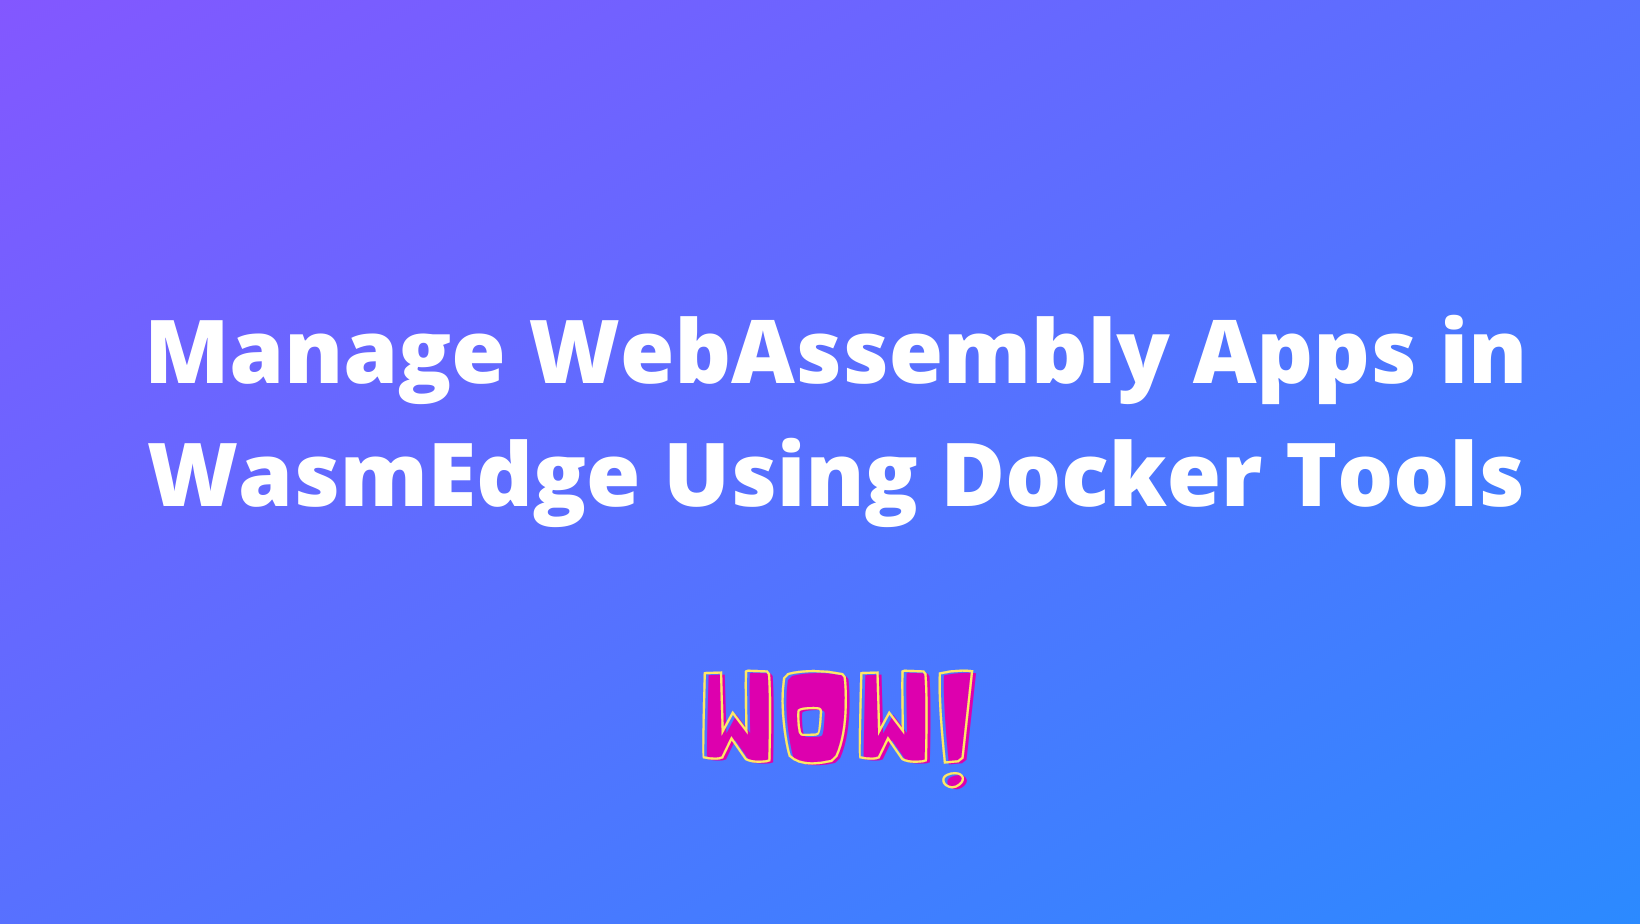 用 Docker 工具管理 WebAssembly 应用程序